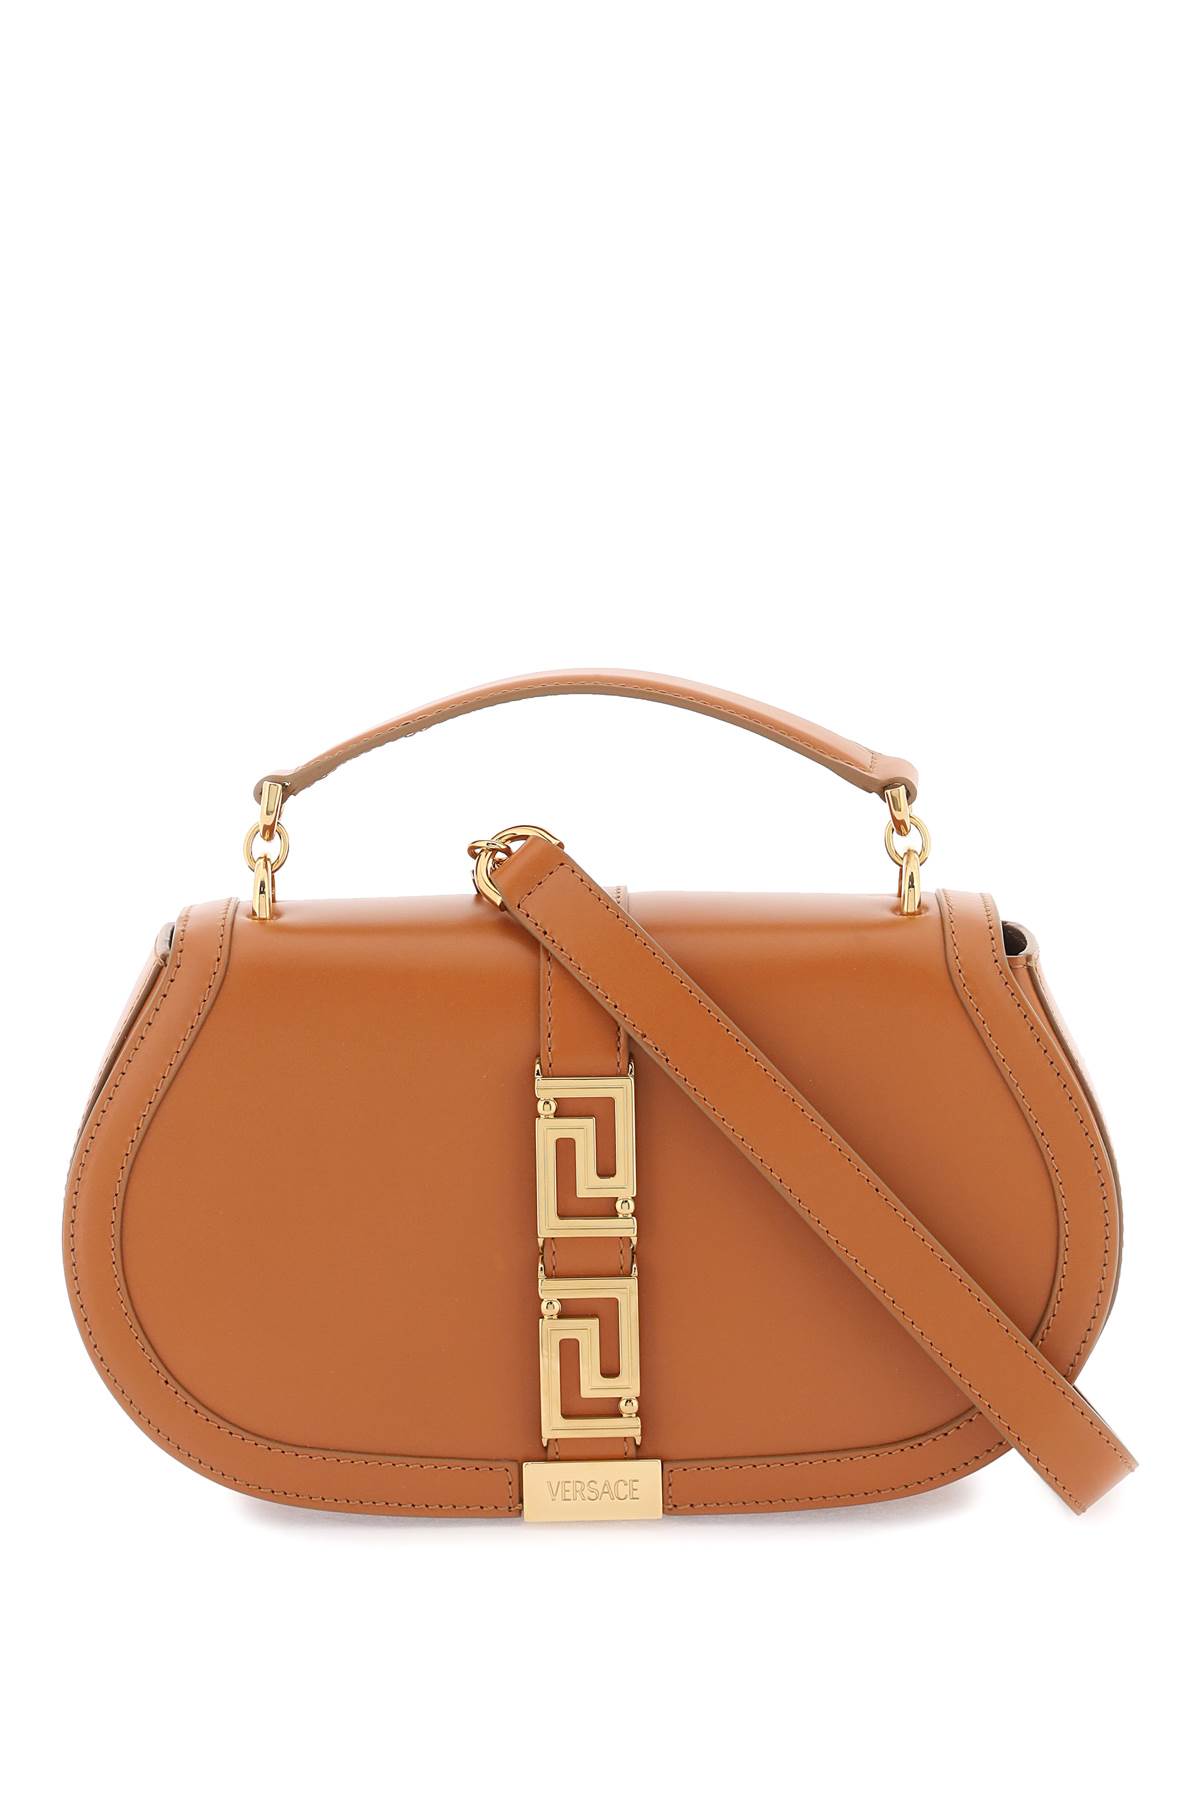 Versace Greca Goddess Shoulder Bag In Caramel  Gold (brown)